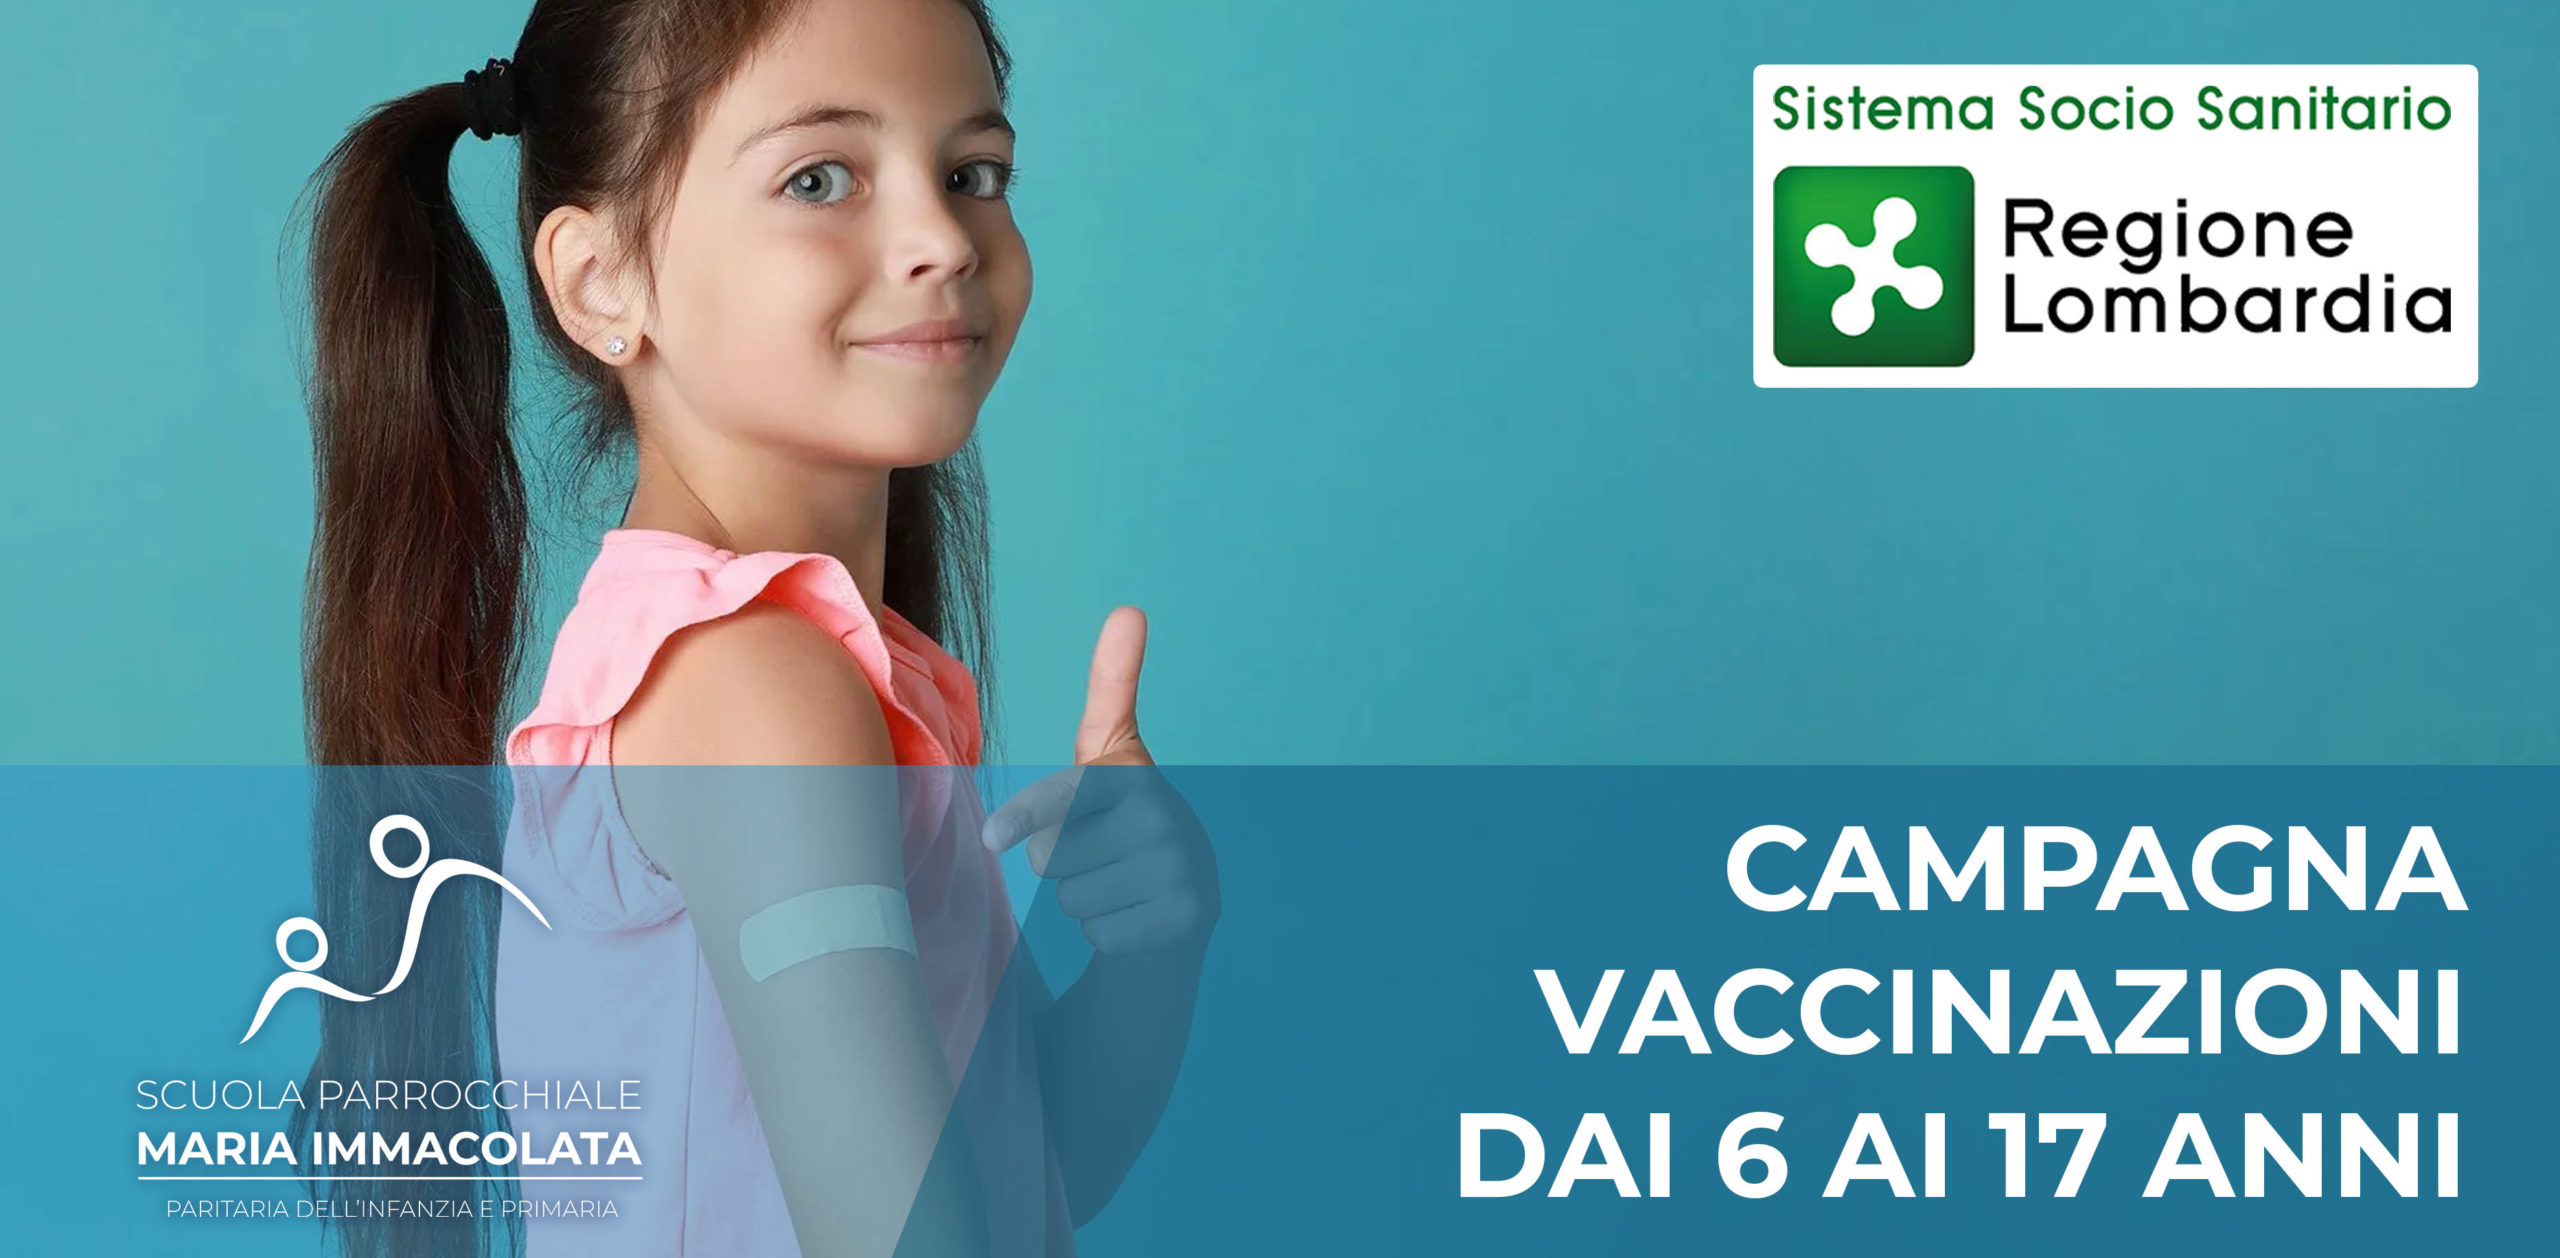 Recuperi vaccinali in via Cherasco sabato 3 dicembre 2022